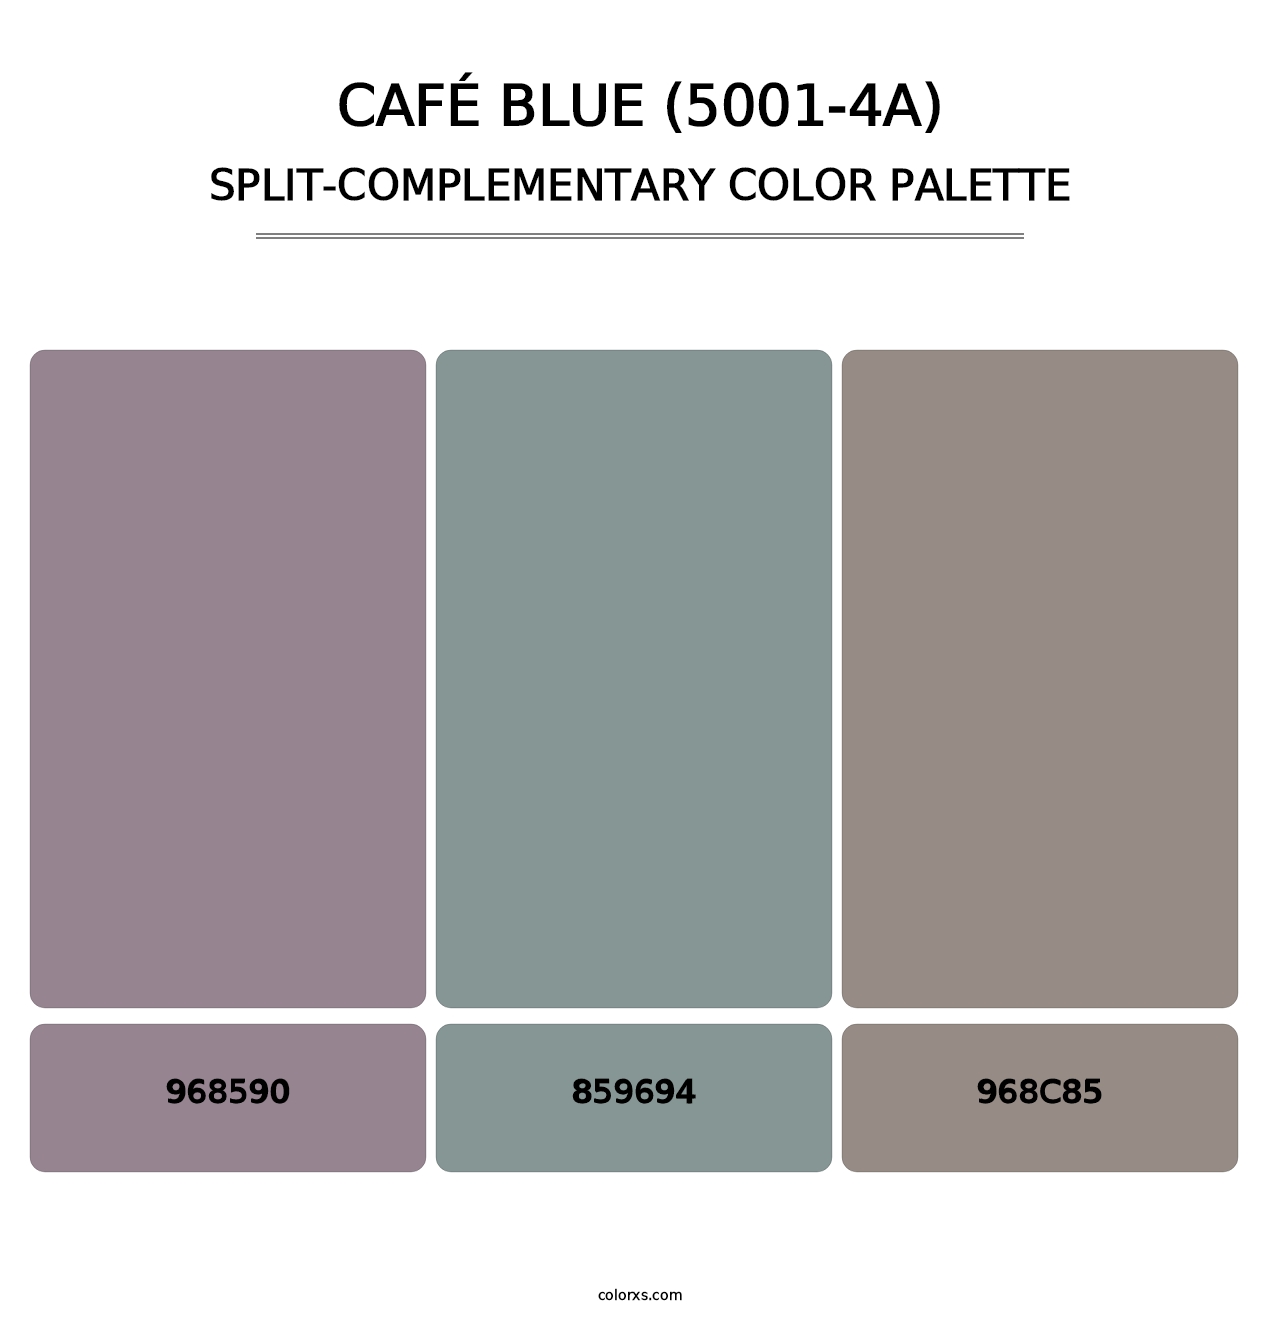 Café Blue (5001-4A) - Split-Complementary Color Palette